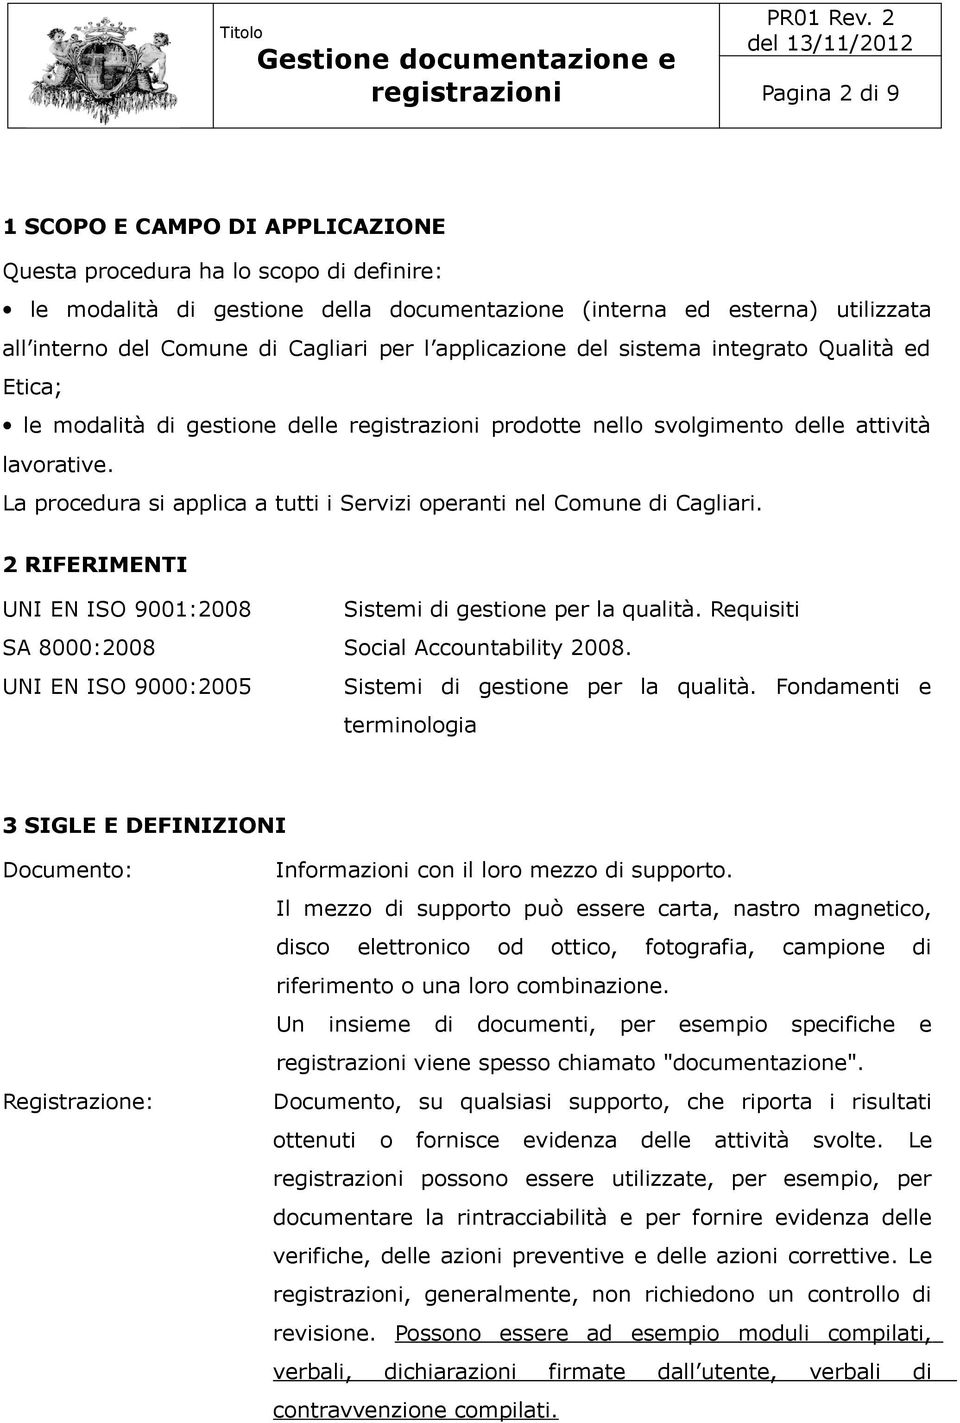 La procedura si applica a tutti i Servizi operanti nel Comune di Cagliari. 2 RIFERIMENTI UNI EN ISO 9001:2008 Sistemi di gestione per la qualità. Requisiti SA 8000:2008 Social Accountability 2008.